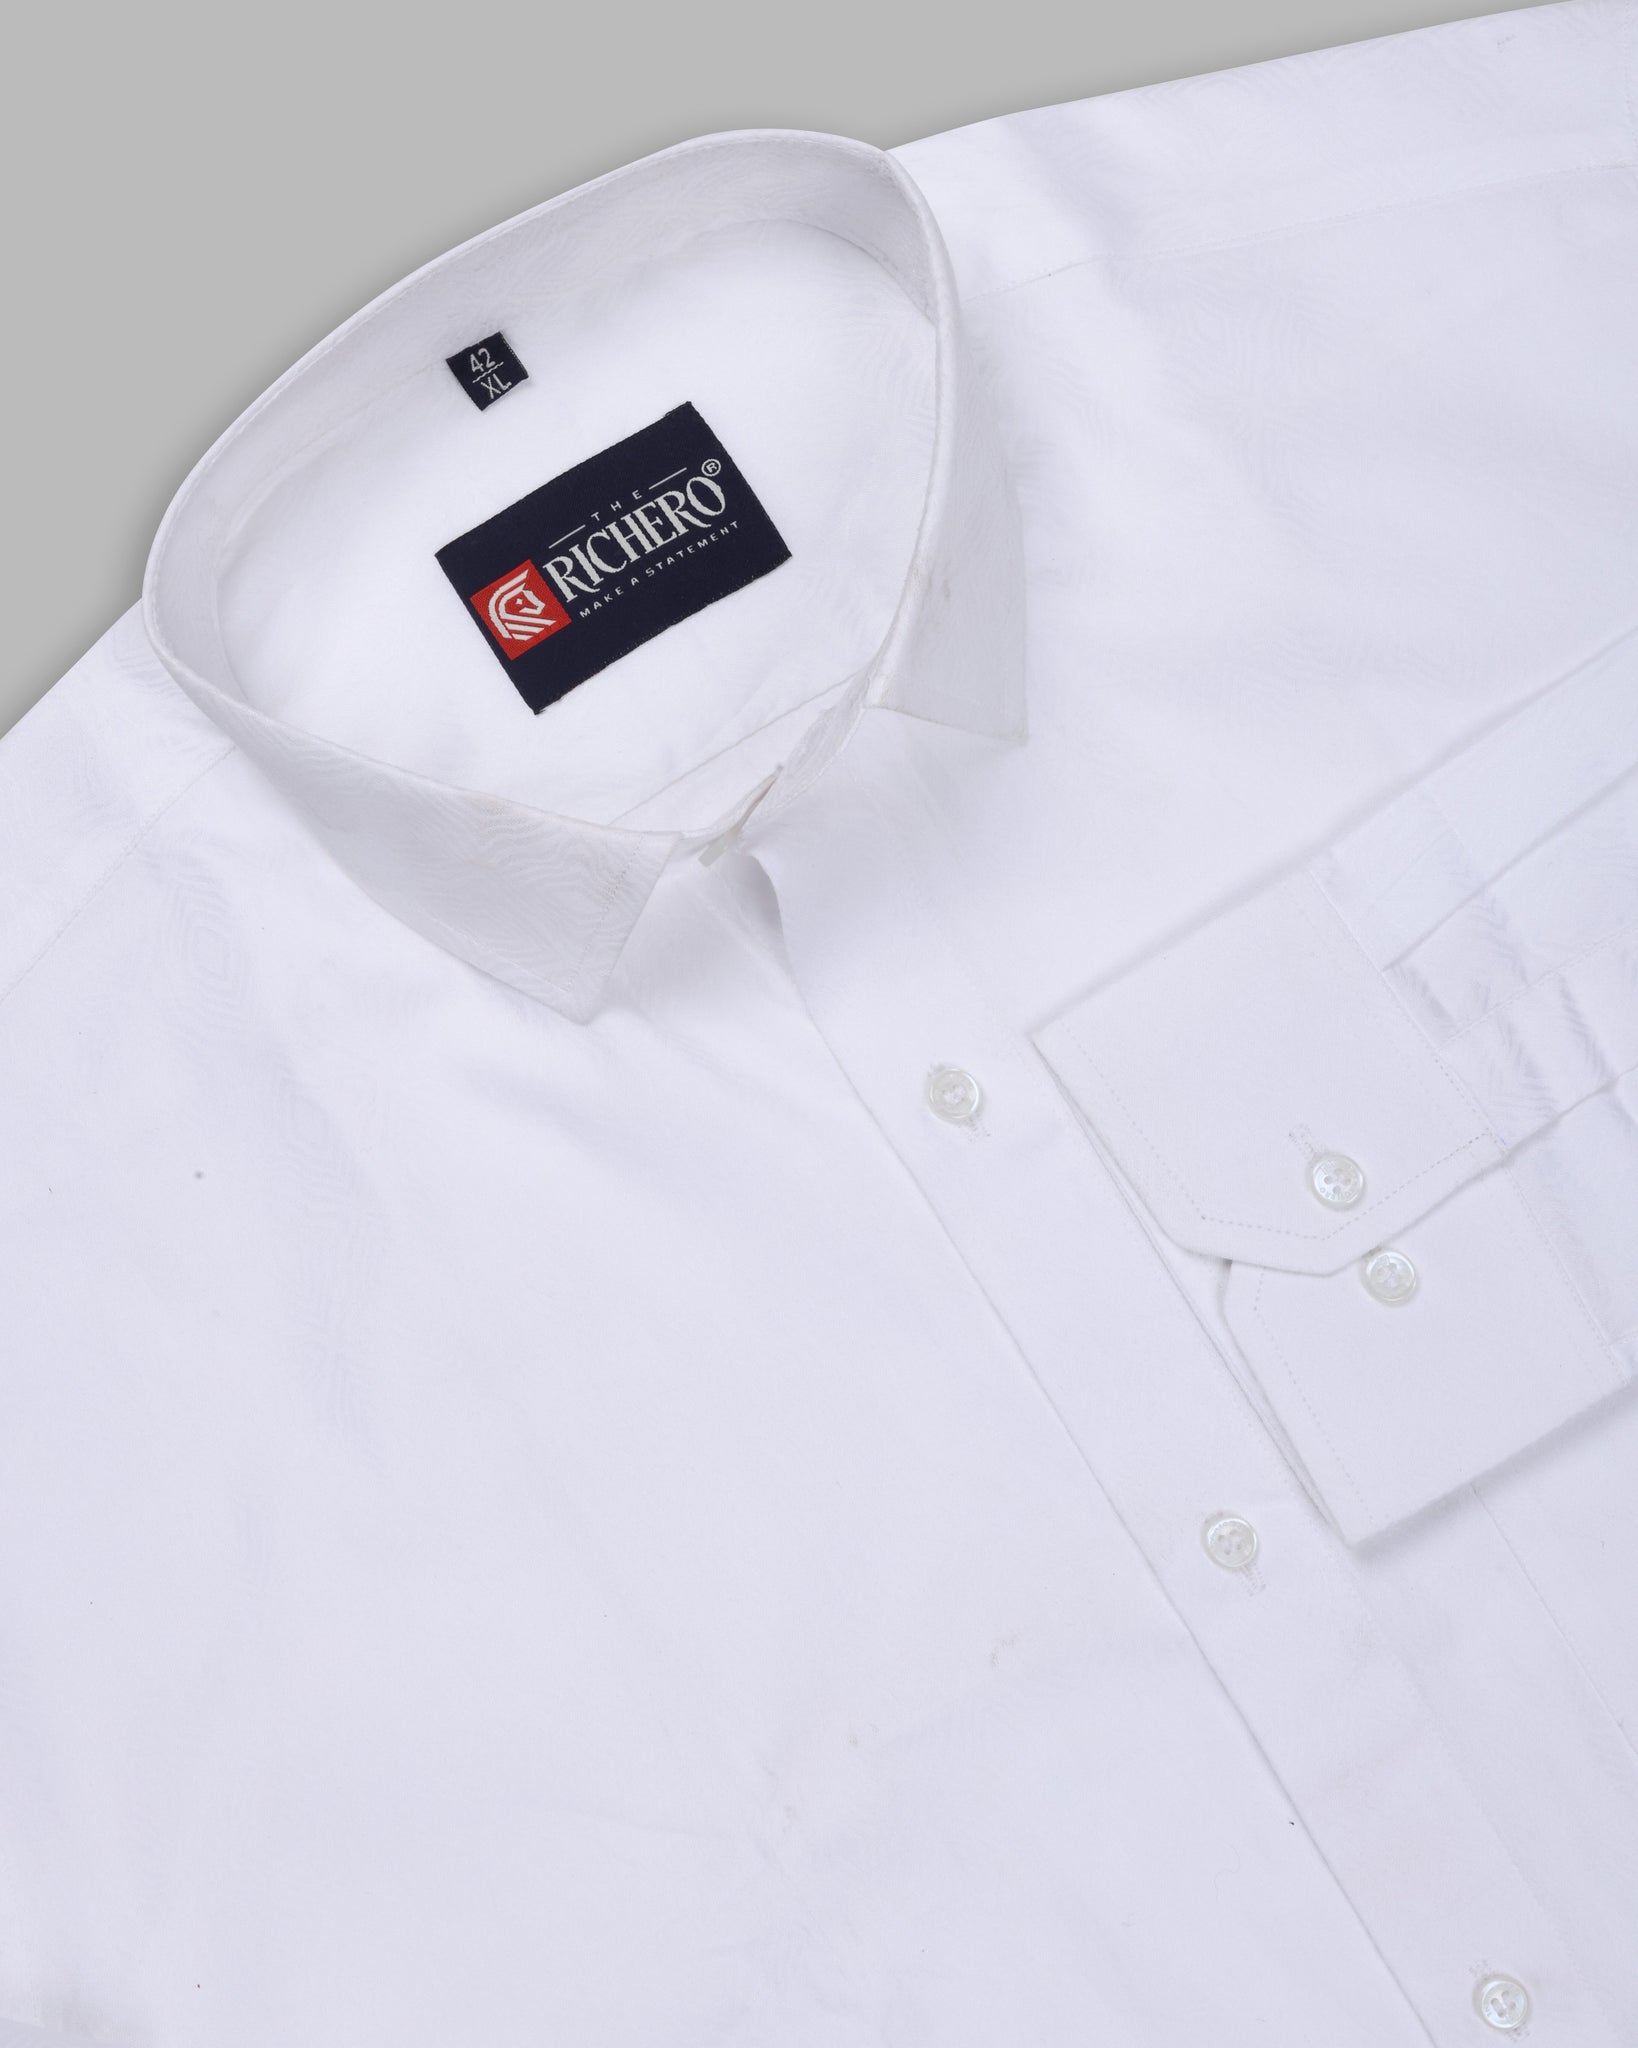 Plain white premium cotton shirt